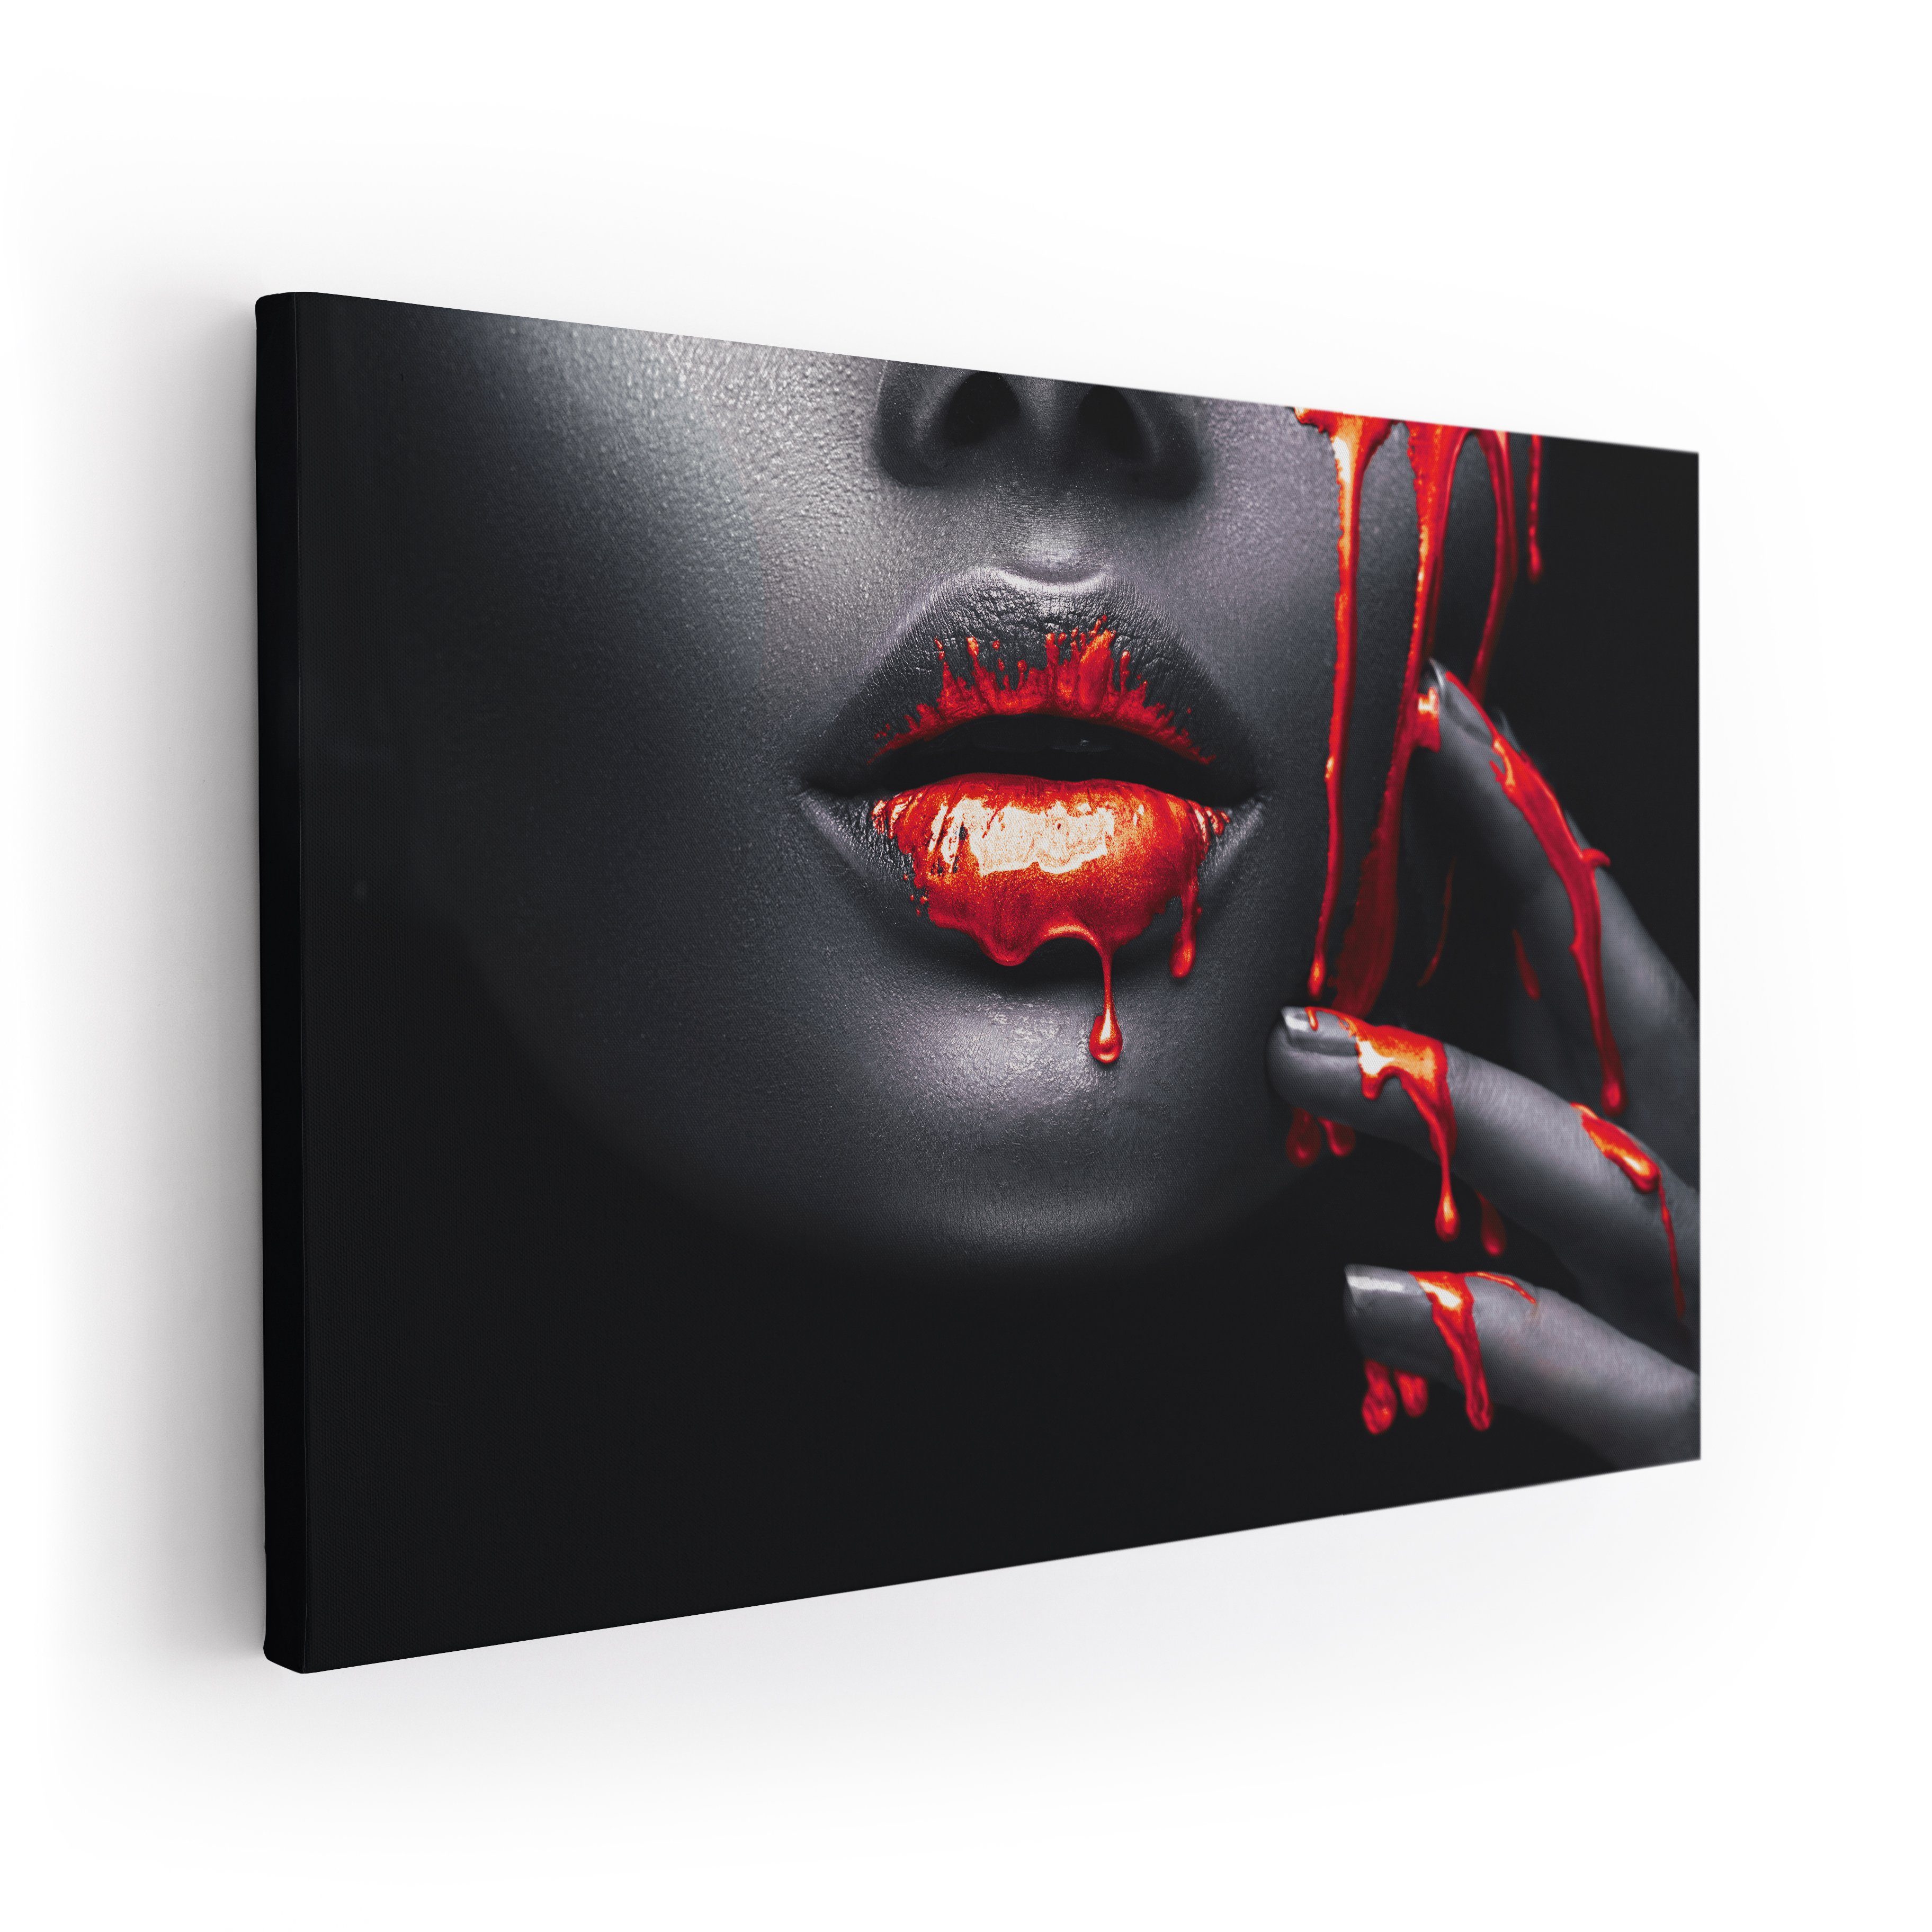 ArtMind XXL-Wandbild RED Premium Leinwand in Art, Poster als Bild, & Wandbilder verschiedenen gerahmte Größen, Wall Canva FACE